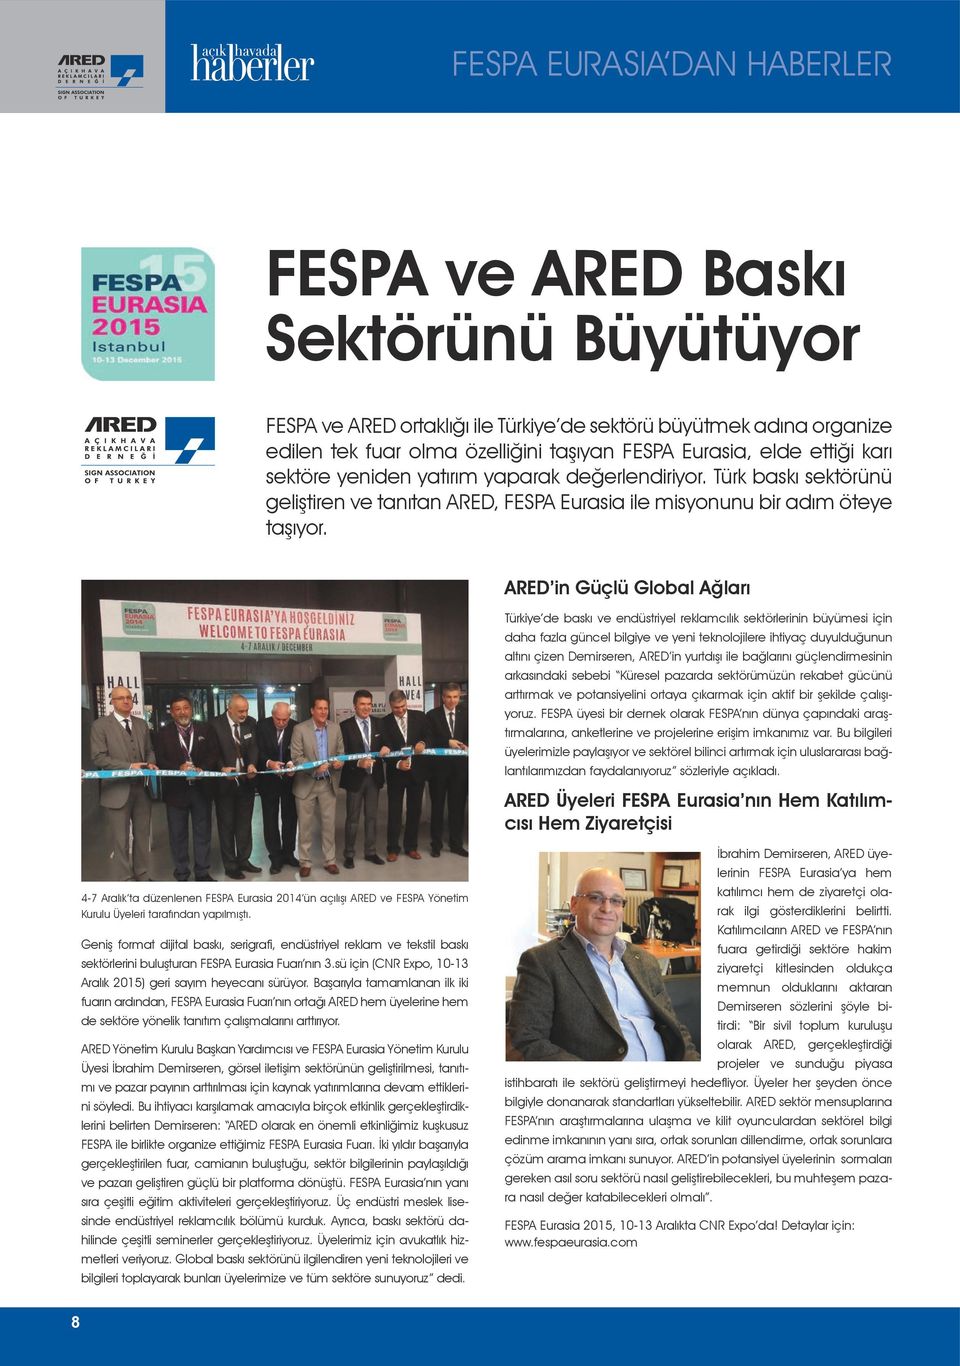 ARED in Güçlü Global Ağları Türkiye de baskı ve endüstriyel reklamcılık sektörlerinin büyümesi için daha fazla güncel bilgiye ve yeni teknolojilere ihtiyaç duyulduğunun altını çizen Demirseren, ARED